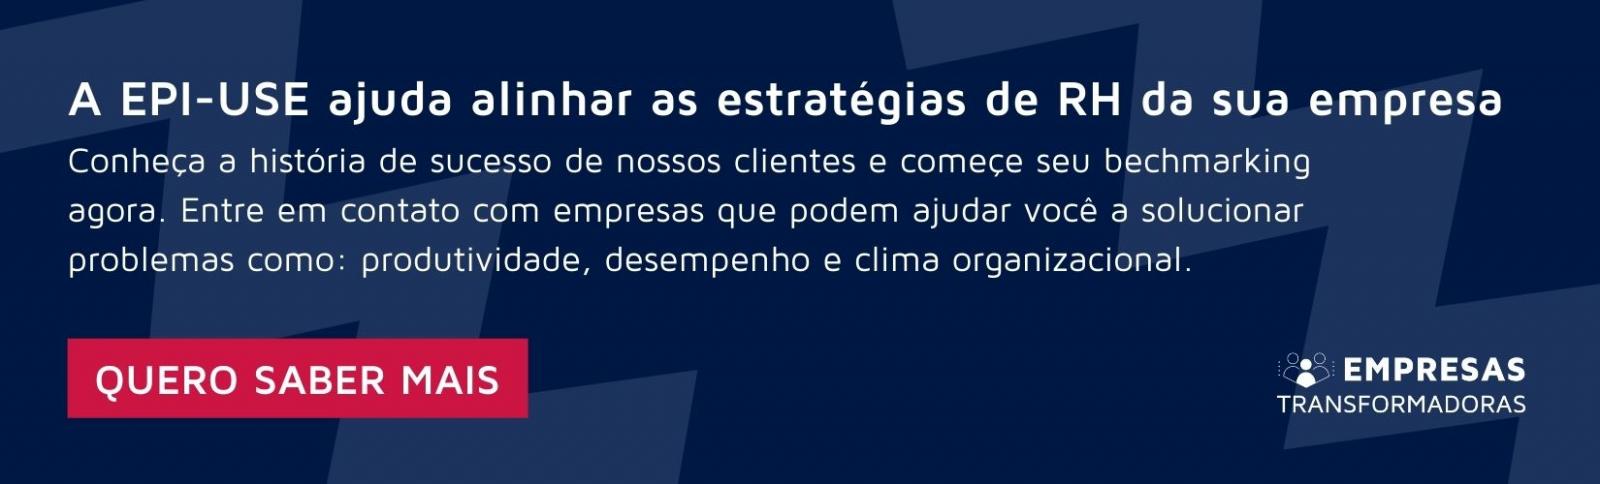 Go-Live Ford Brasil da solução WorkForce Software